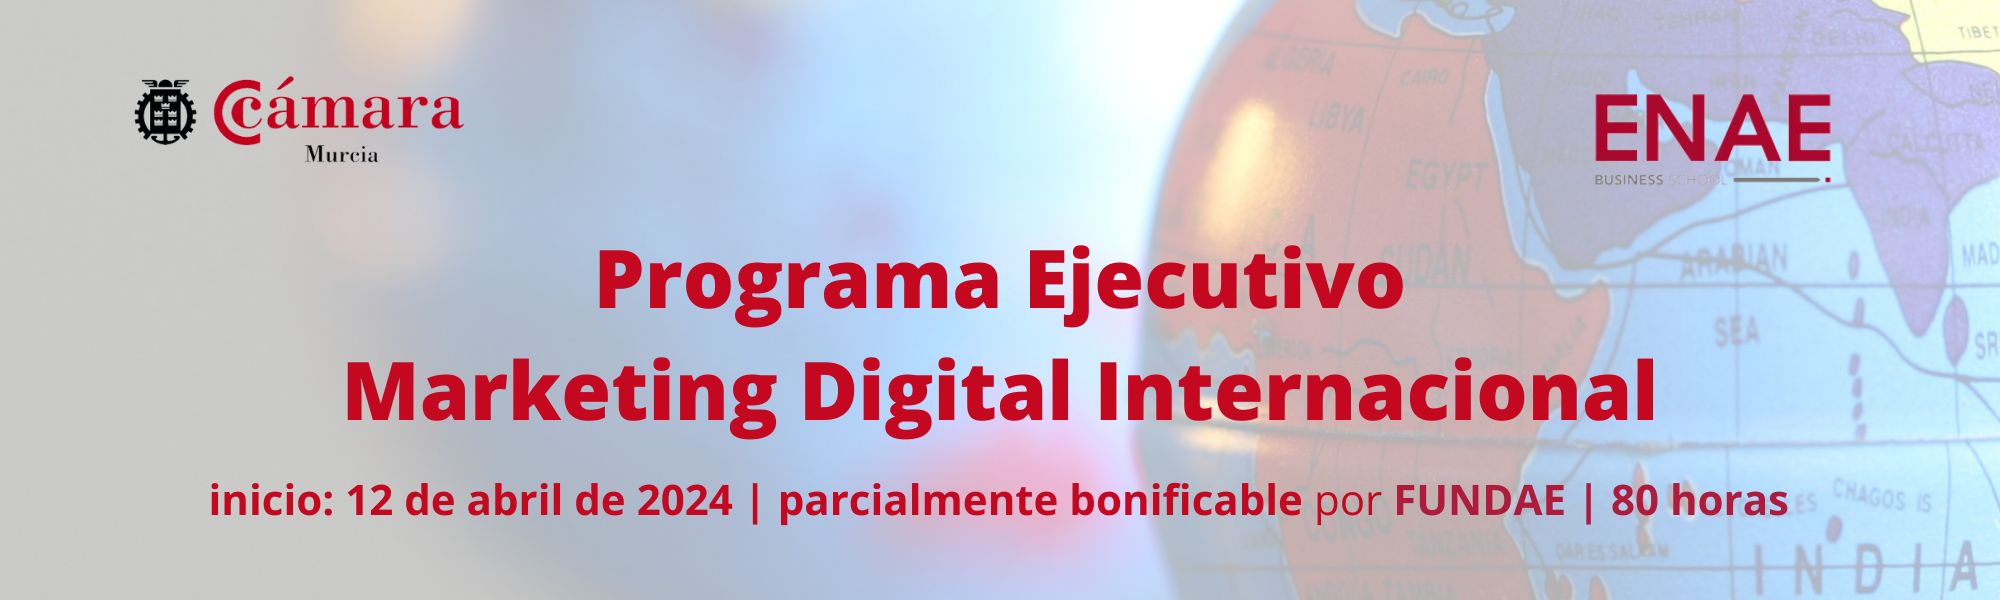 Marketing Digital Internacional | Programa Ejecutivo | Cámara de Comercio de Murcia | ENAE Business School